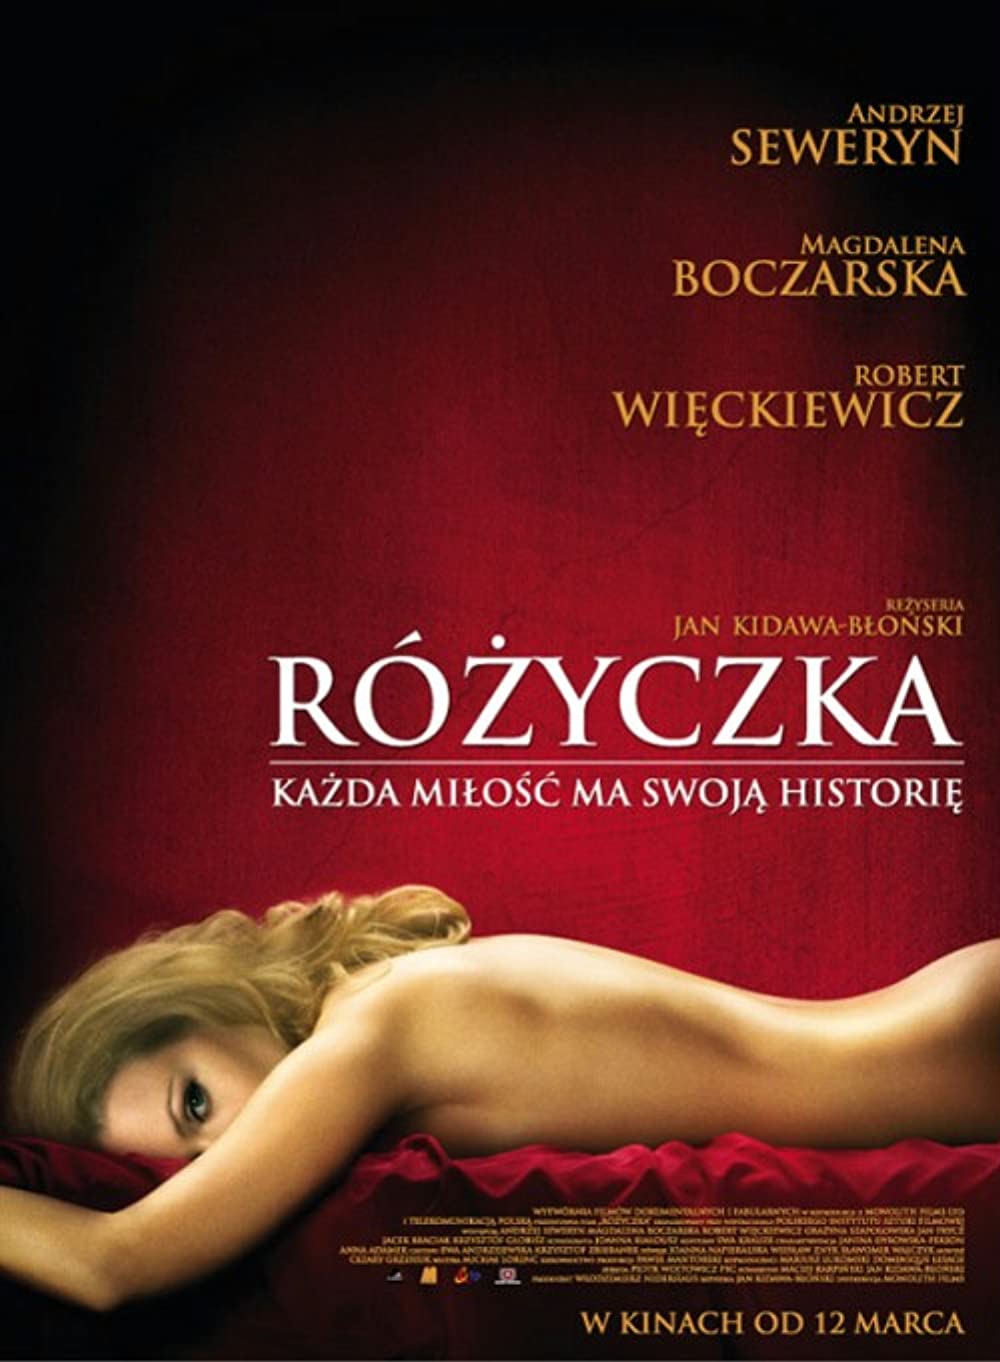 Download Rózyczka Movie | Watch Rózyczka